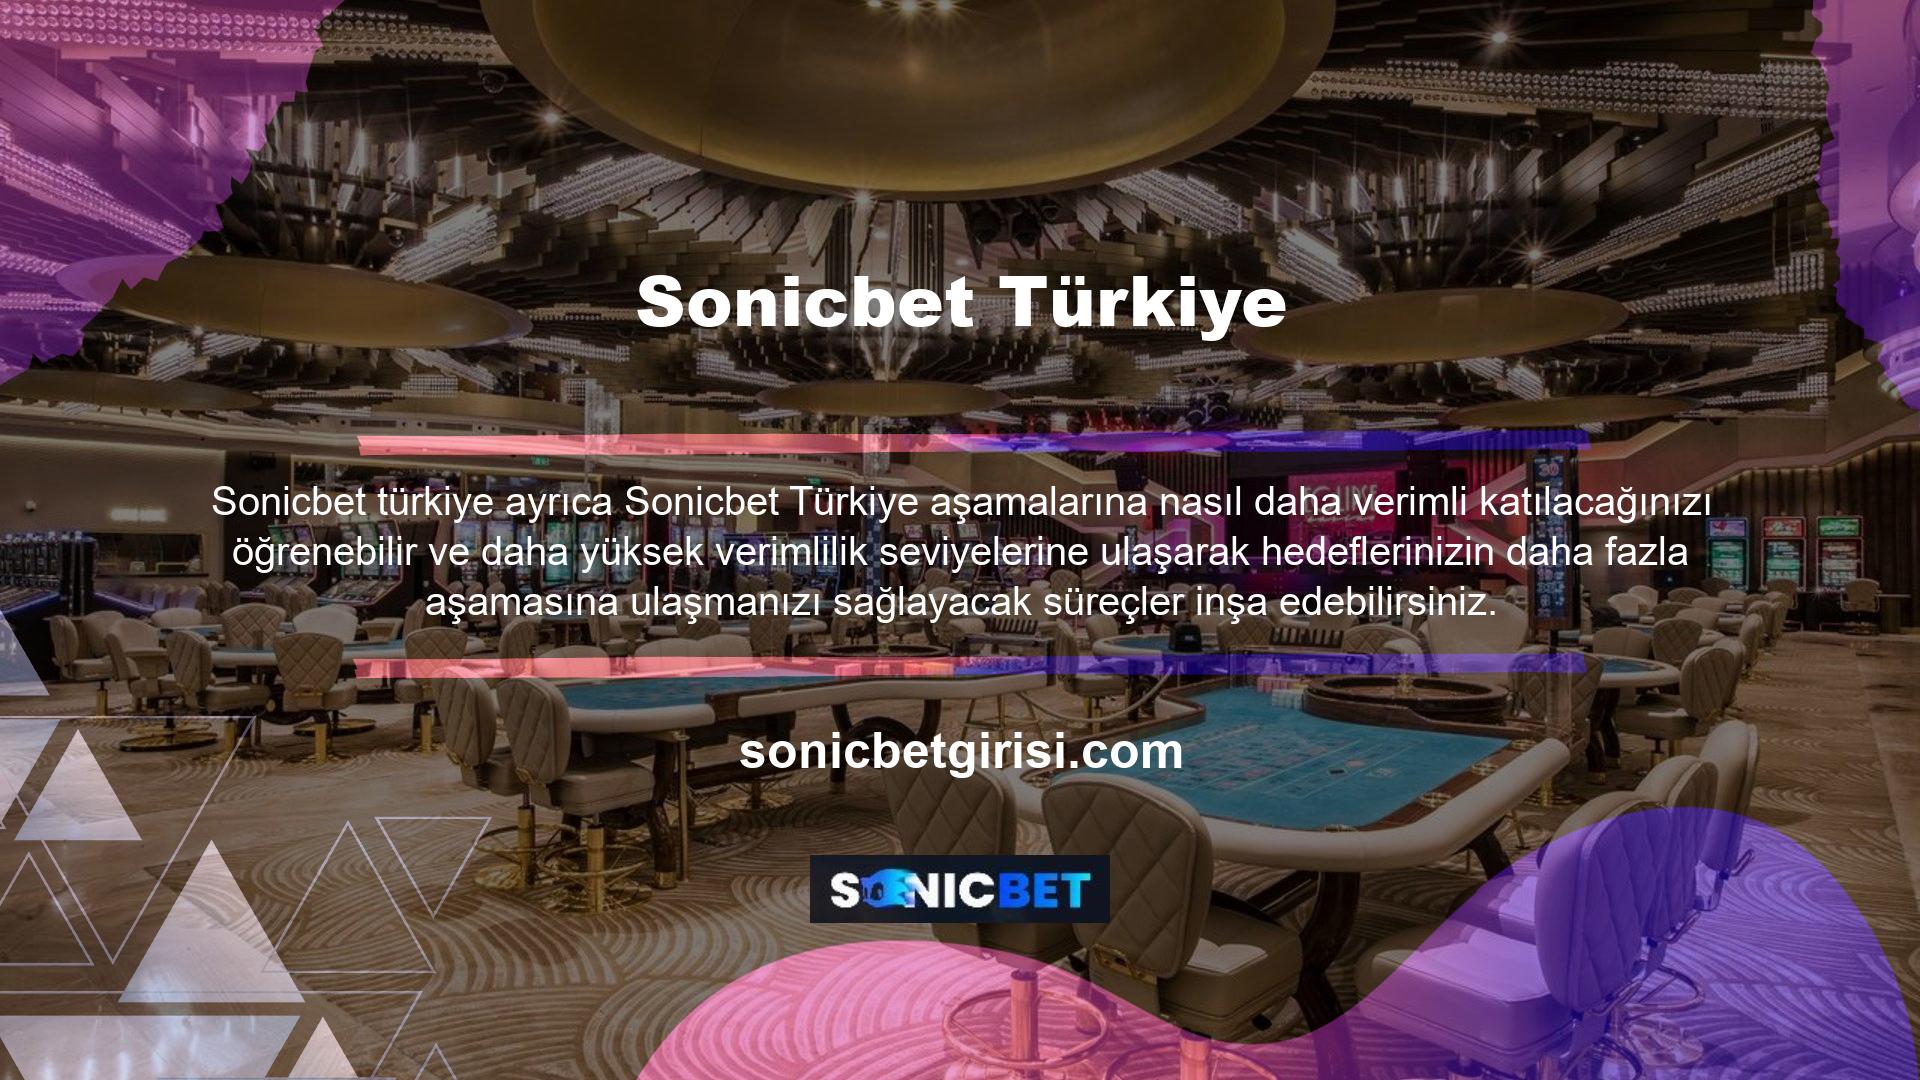 Bu bağlamda Türkiye'nin seçenekleri ve destekleyici düzenlemeleri bu siteye her an erişim imkanını artırmaktadır